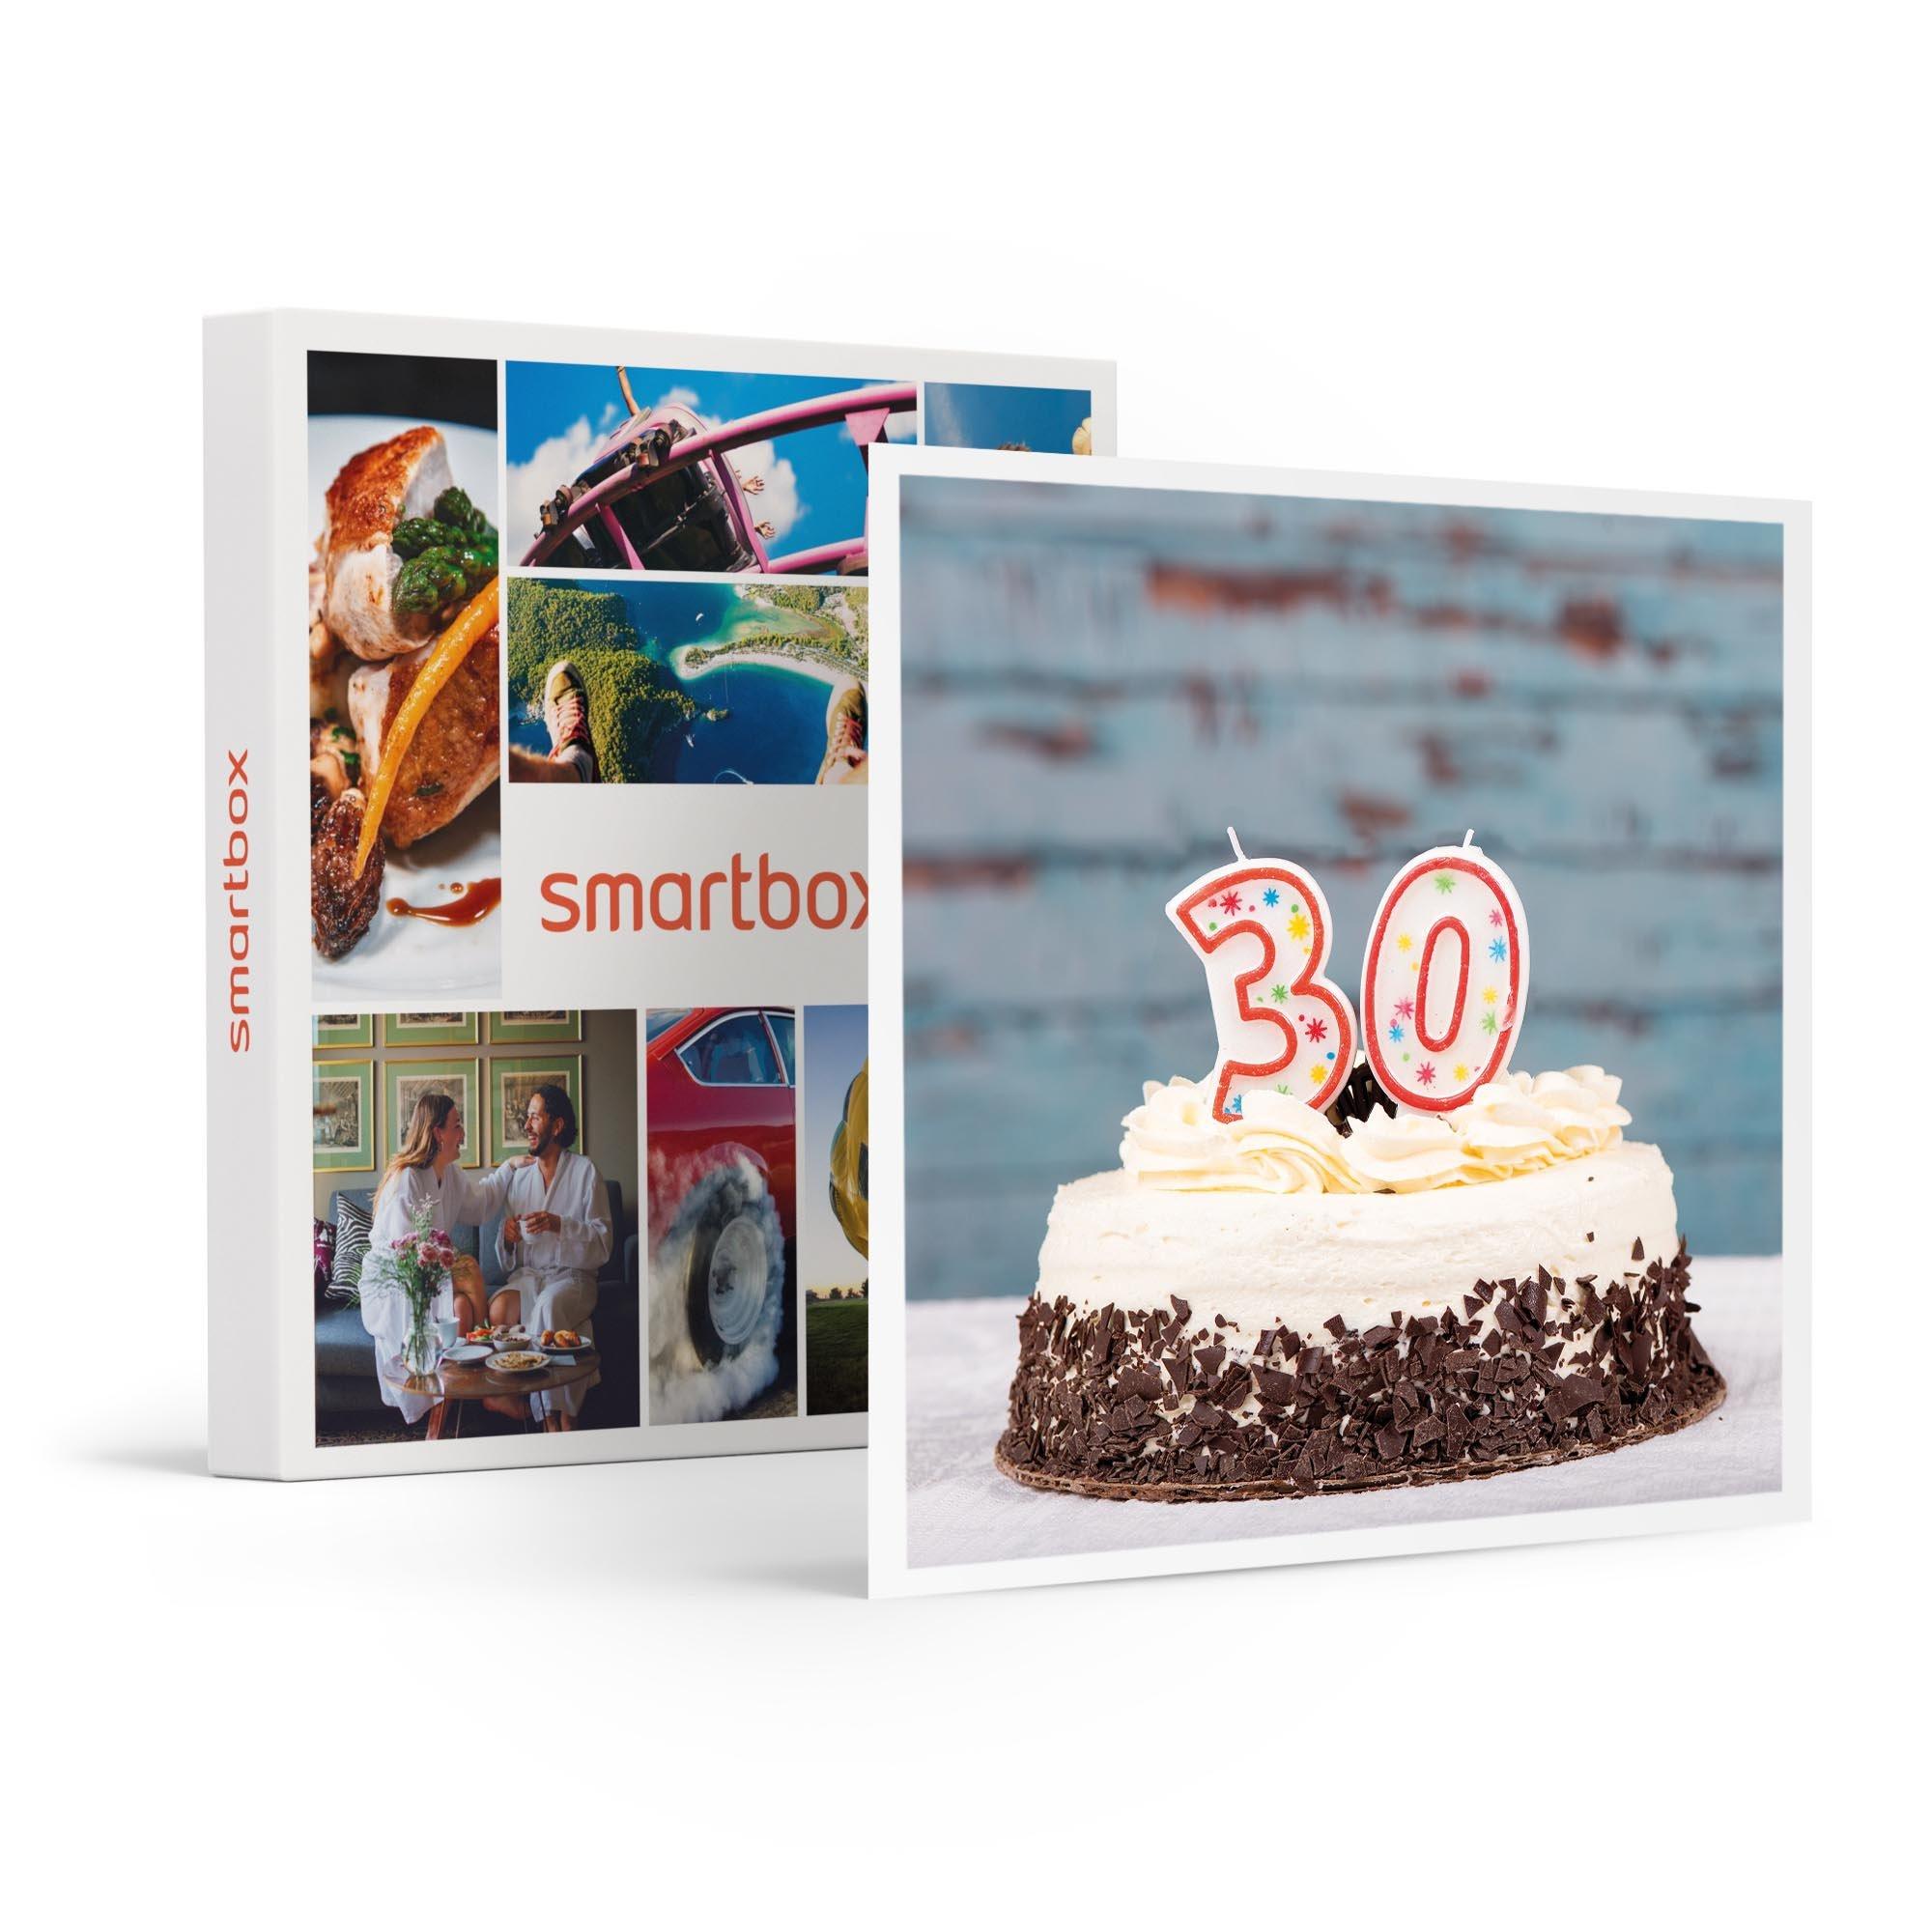 Smartbox  Alles Gute zum Geburtstag! Eine Welt der besonderen Momente zum 30. Geburtstag - Geschenkbox 